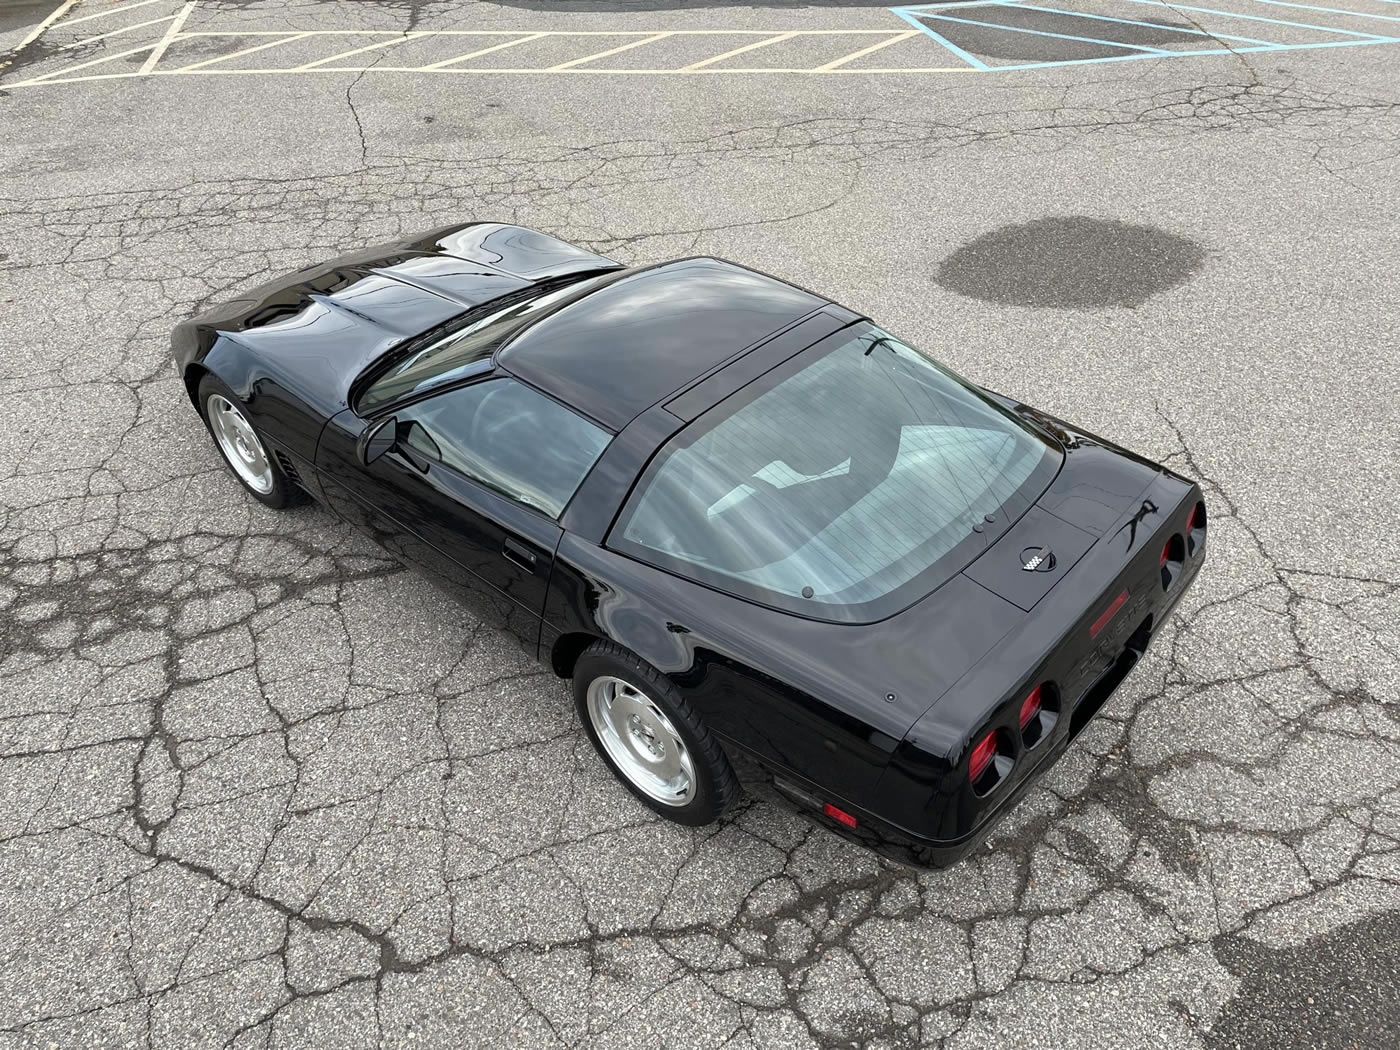 1996 Corvette Coupe in Black